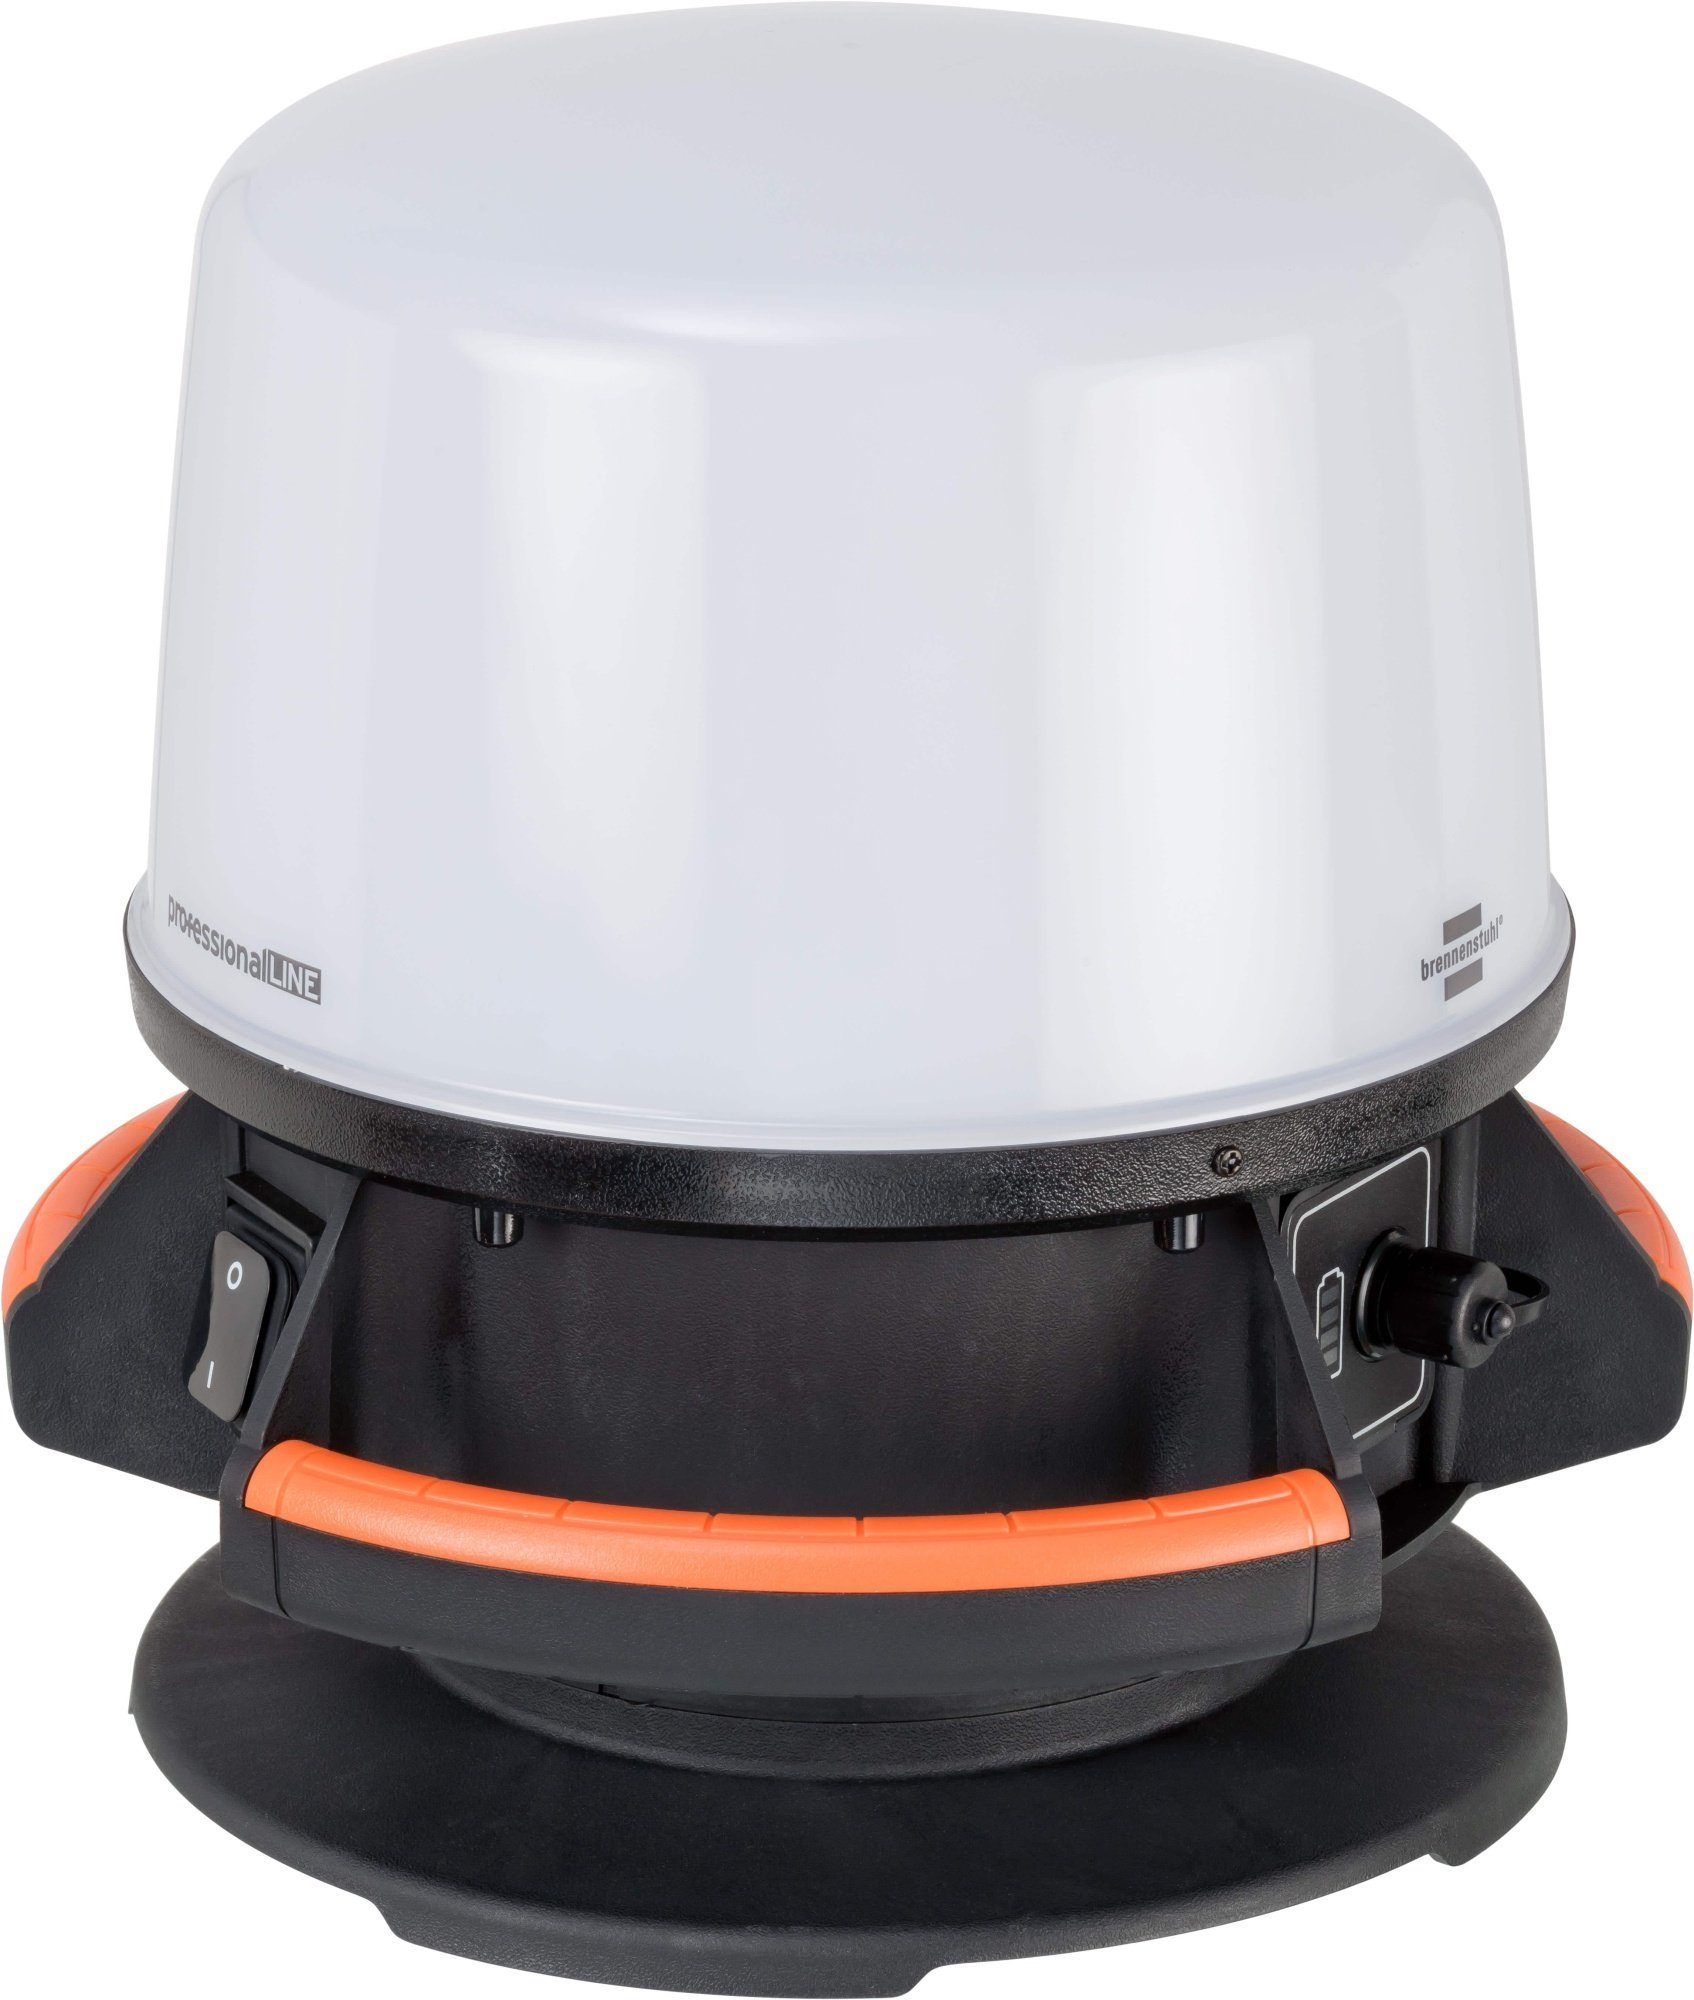 qpool24 Baustrahler, Brennenstuhl professionalLINE Hybrid LED Mobiler Strahler 360°